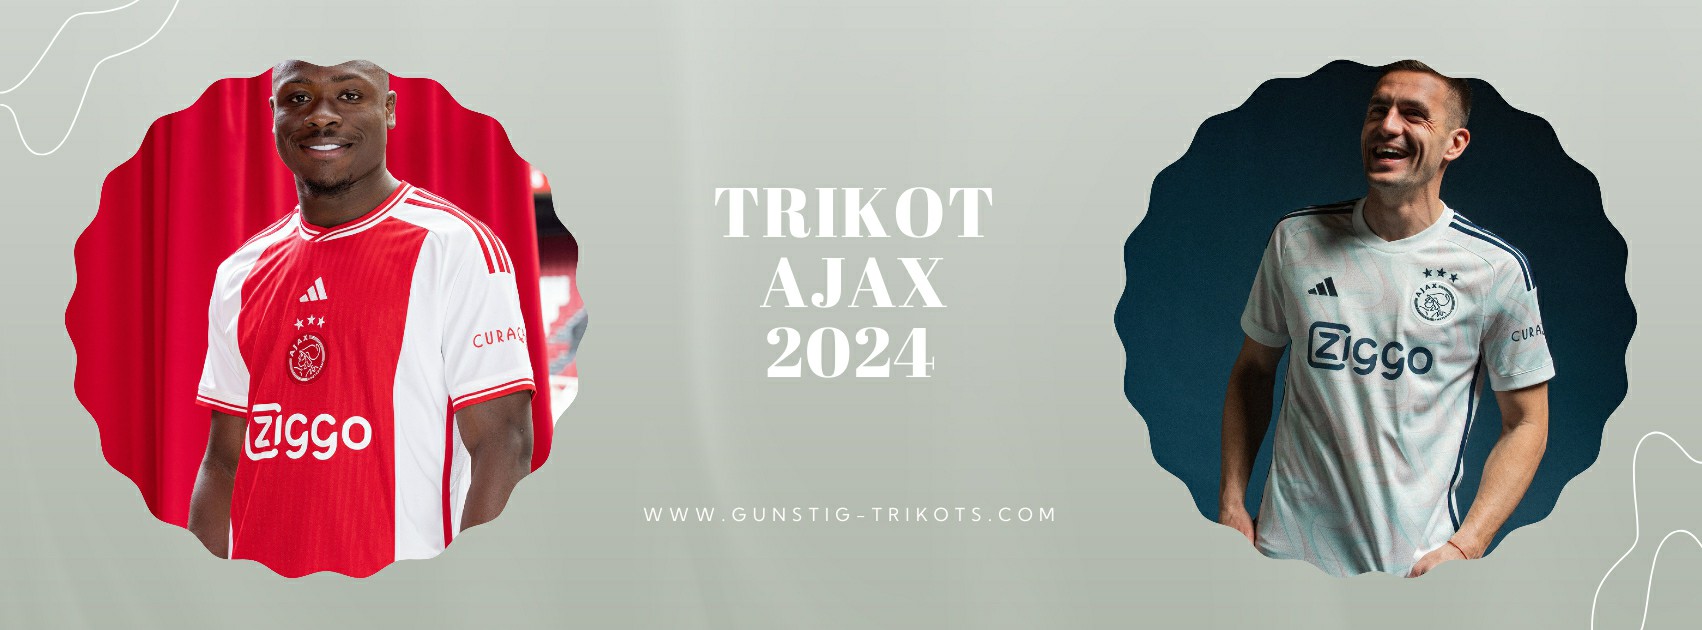 Ajax Trikot 2024-2025